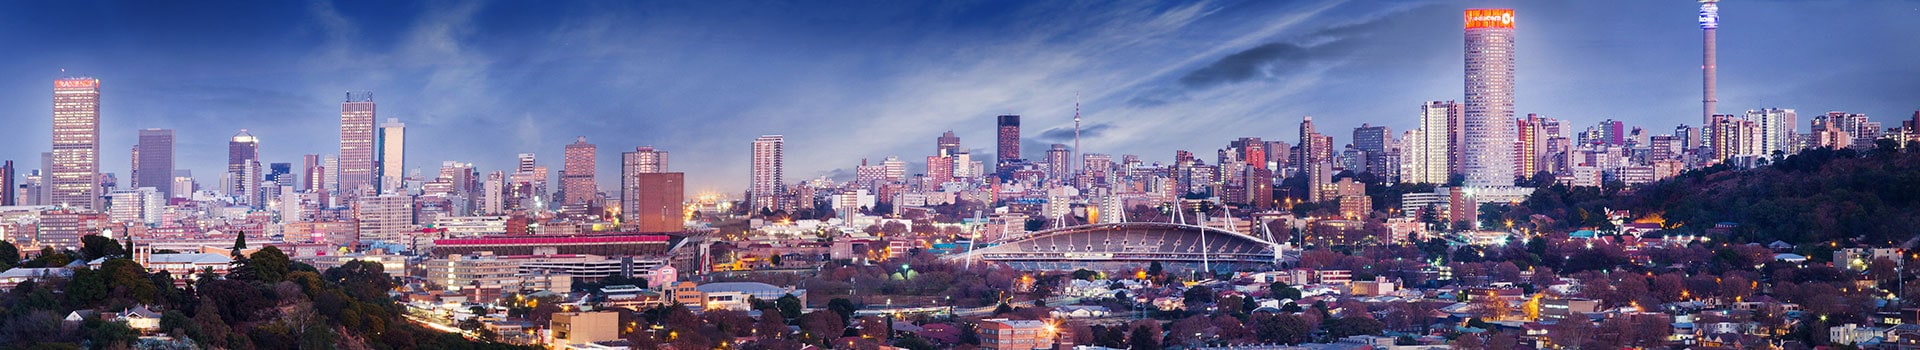 Manises - Johannesburg